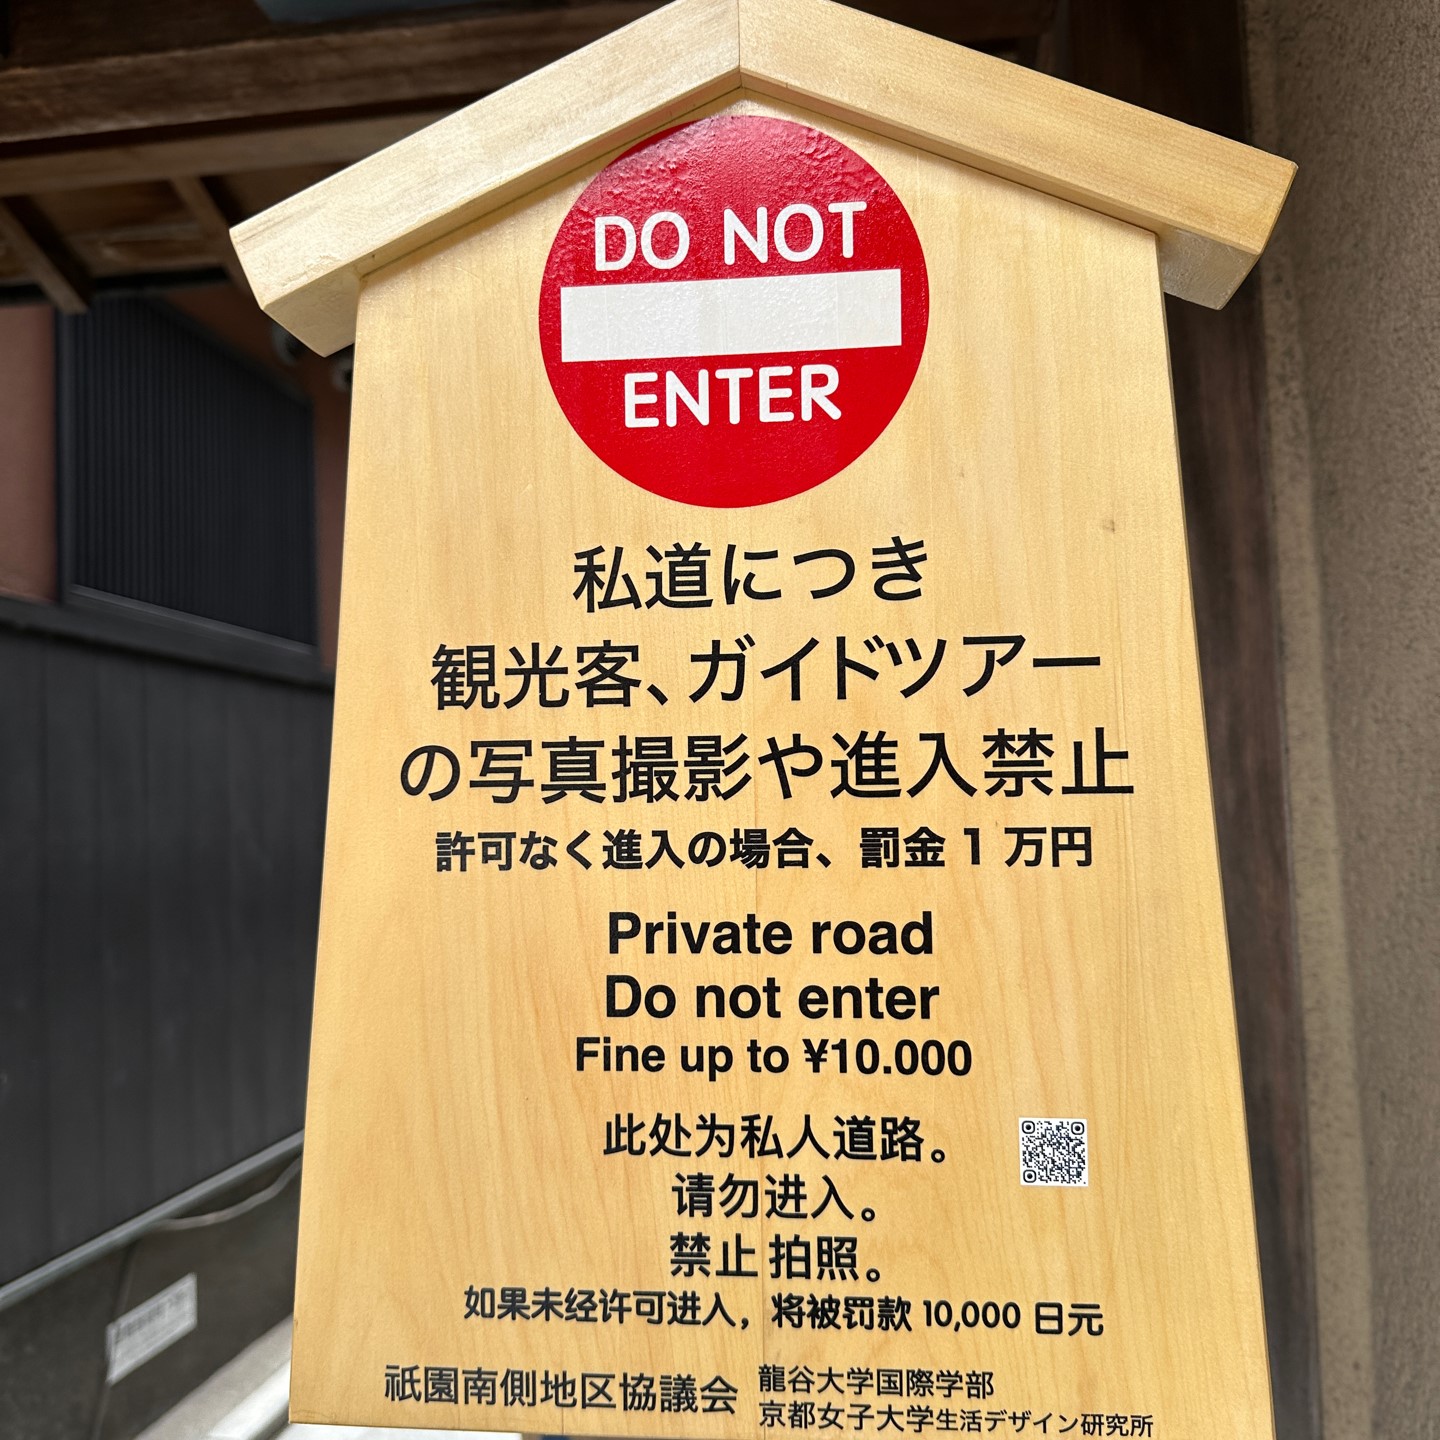 将被罚款10000日元！京都・祇園の小路、きょうからDo not enter！外国 